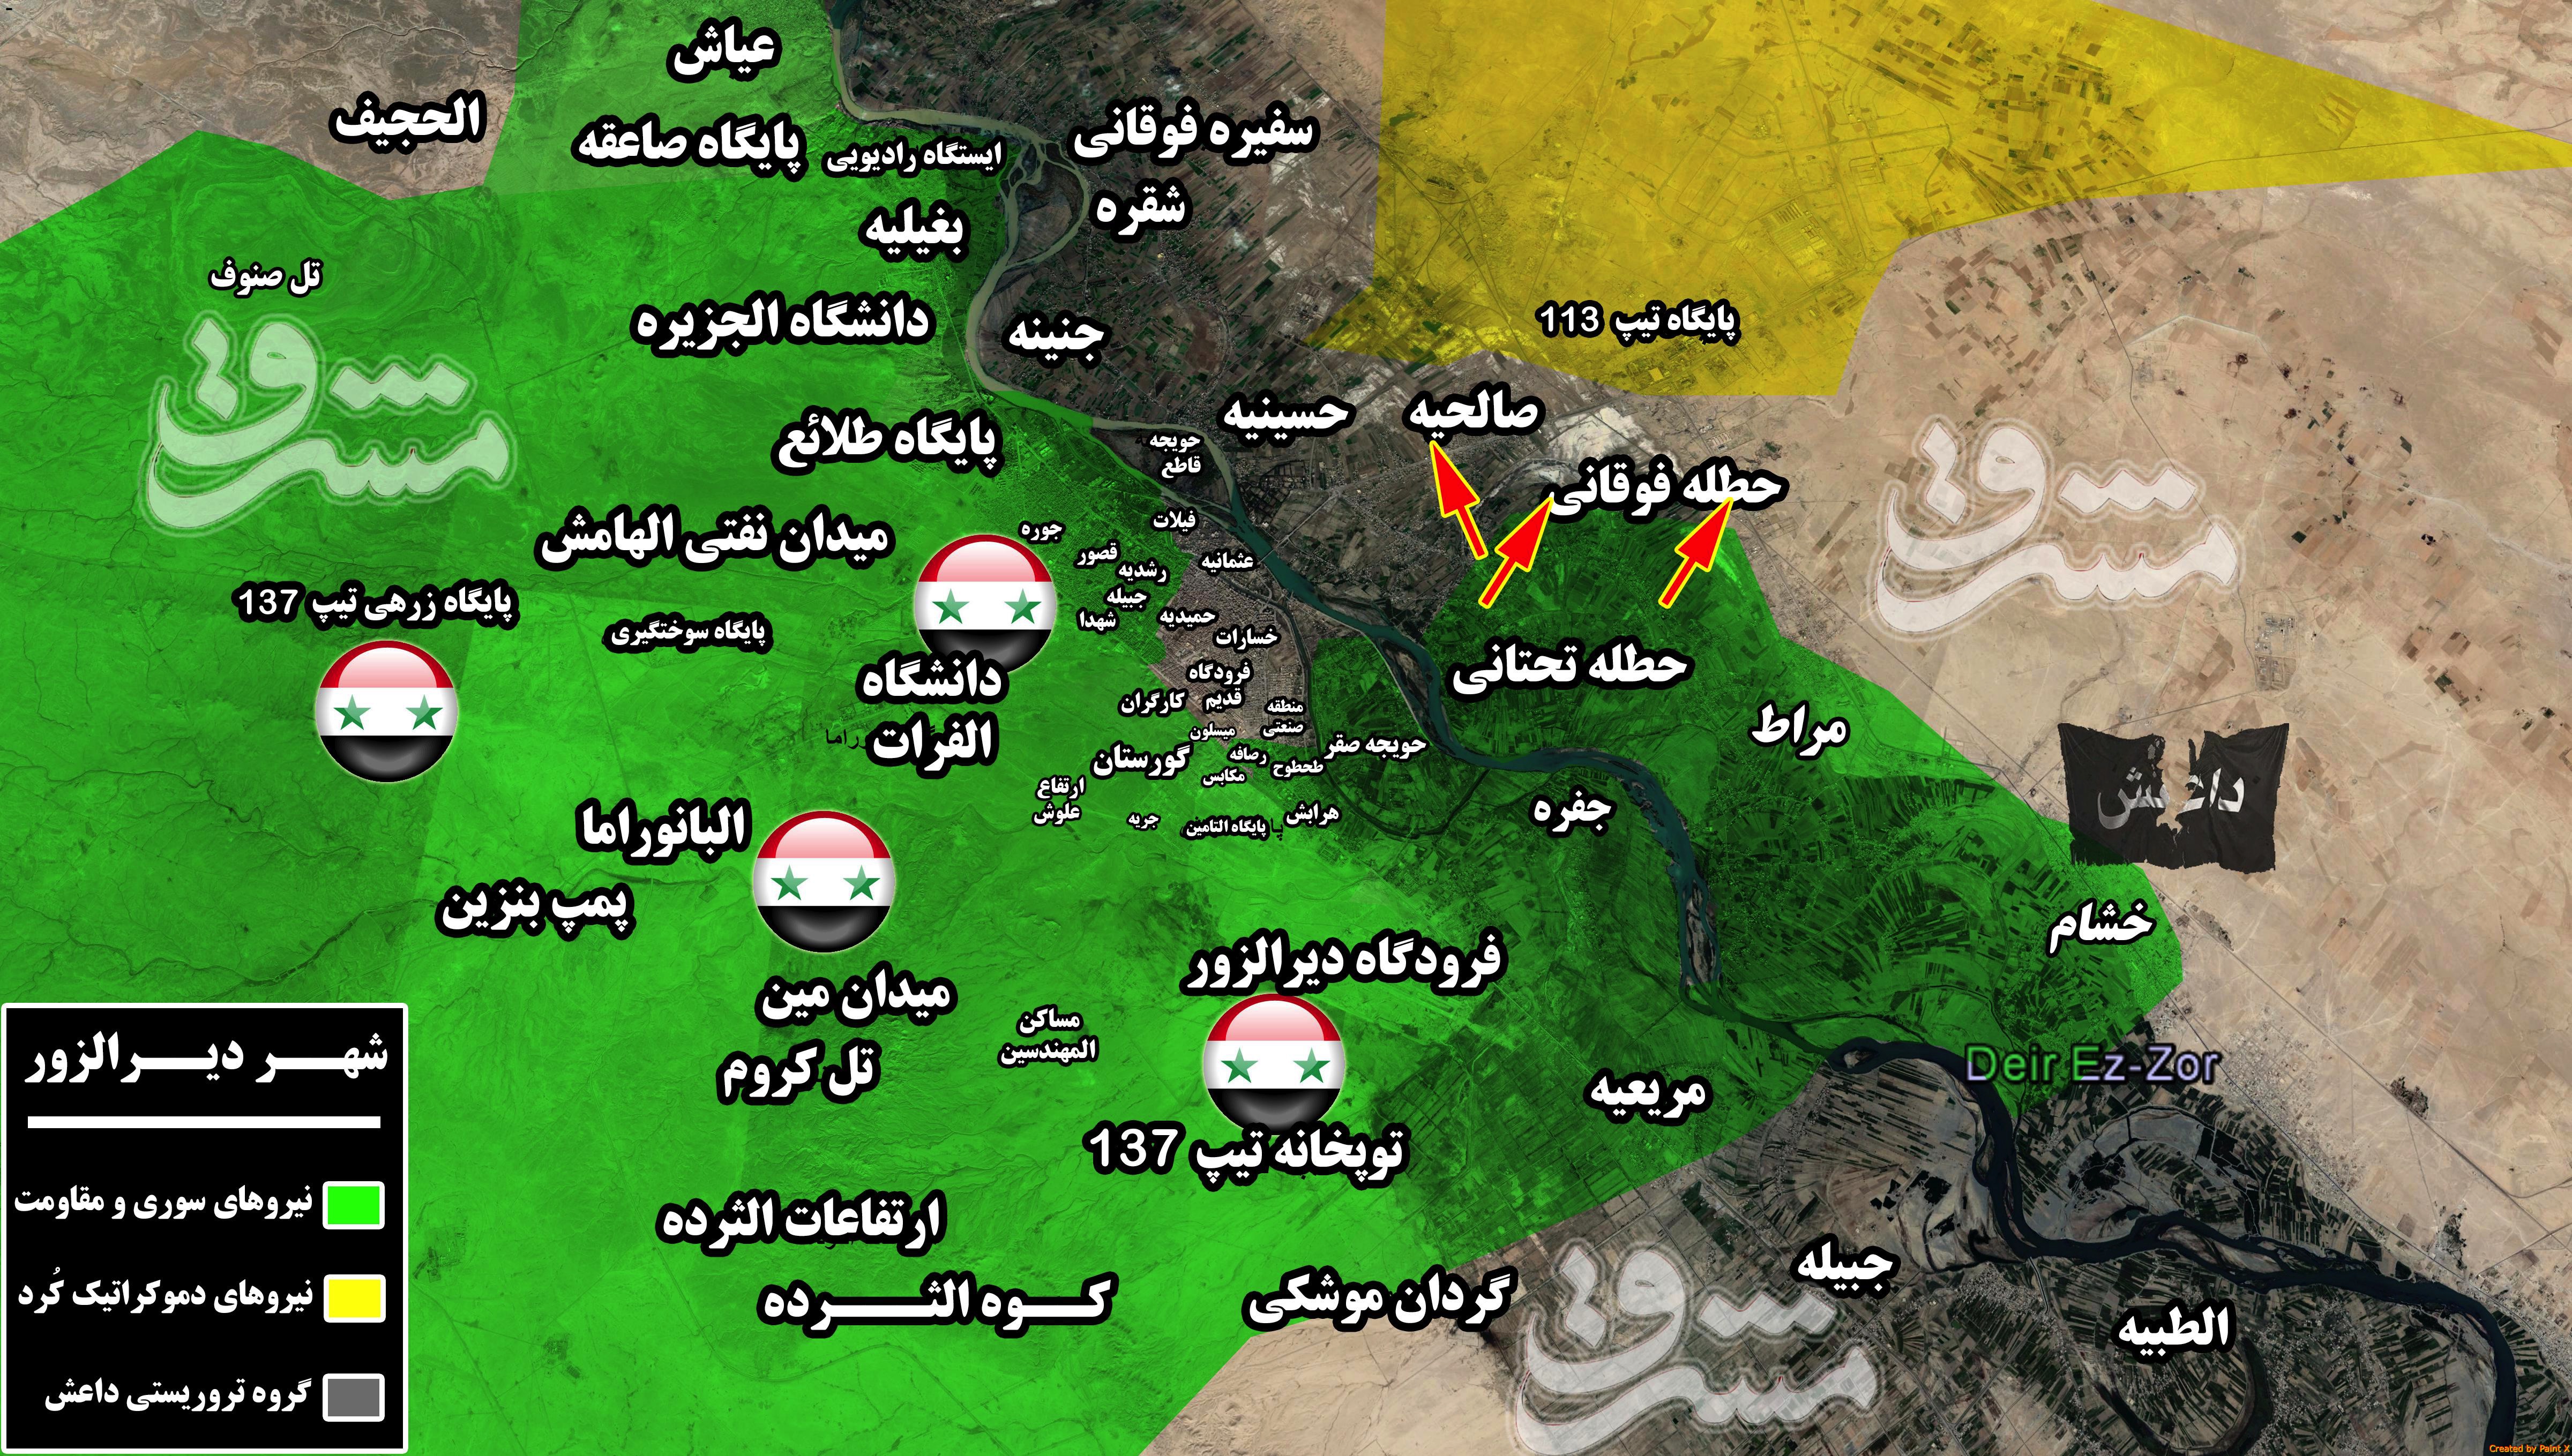 2066512 - جنگ تن به تن در شرق سوریه/ حملات داعش در غرب و شرق شهر دیرالزور به بن بست خورد+ نقشه میدانی